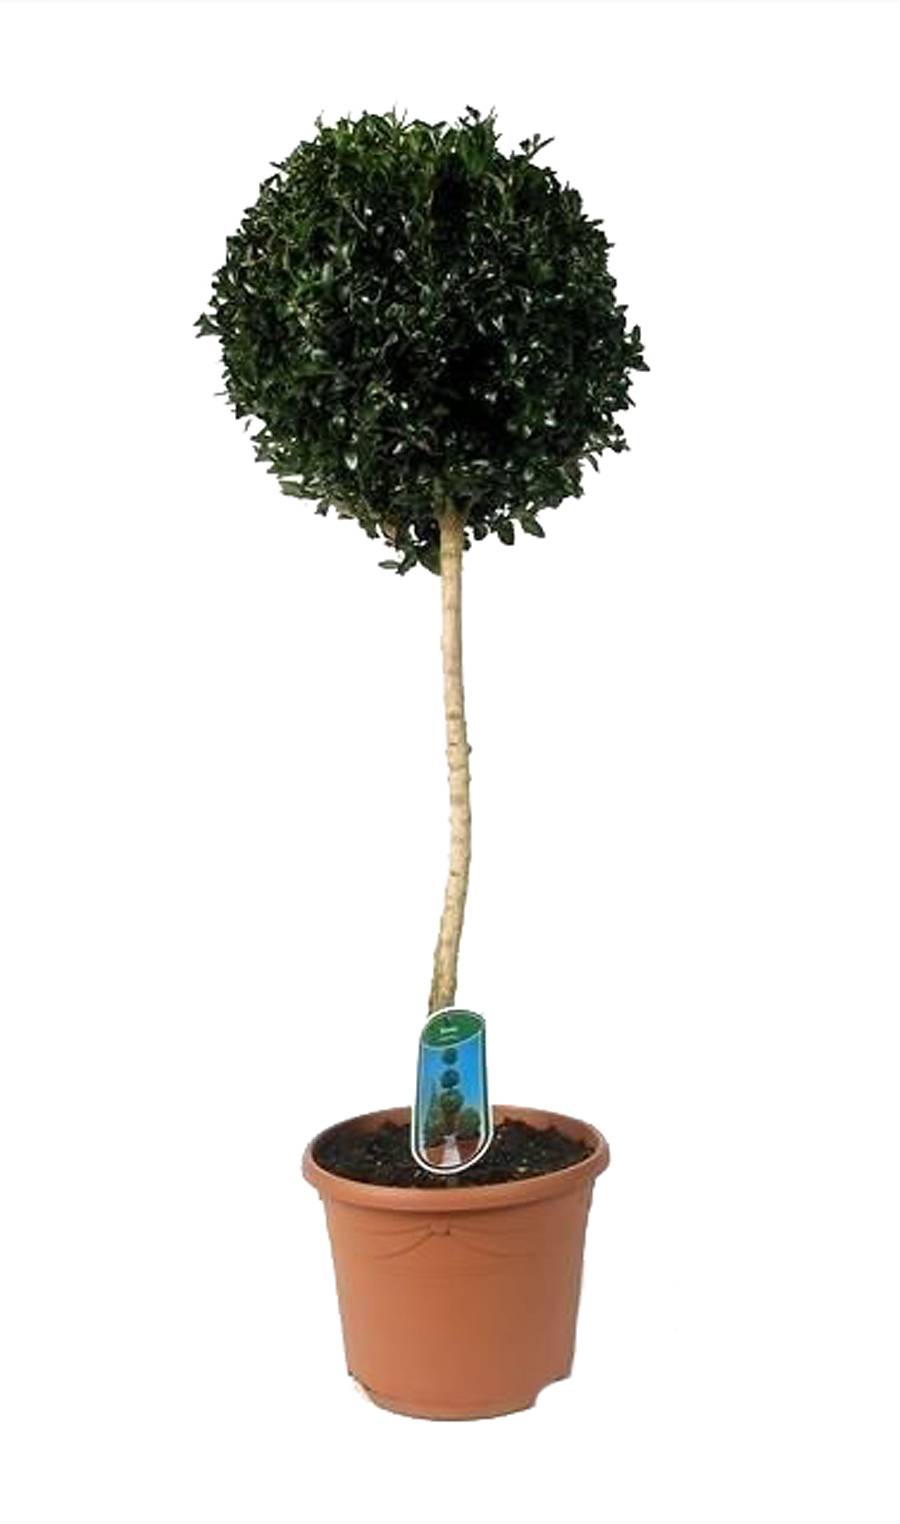 Самшит вечнозеленый (Буксус) - Buxus D25 H100